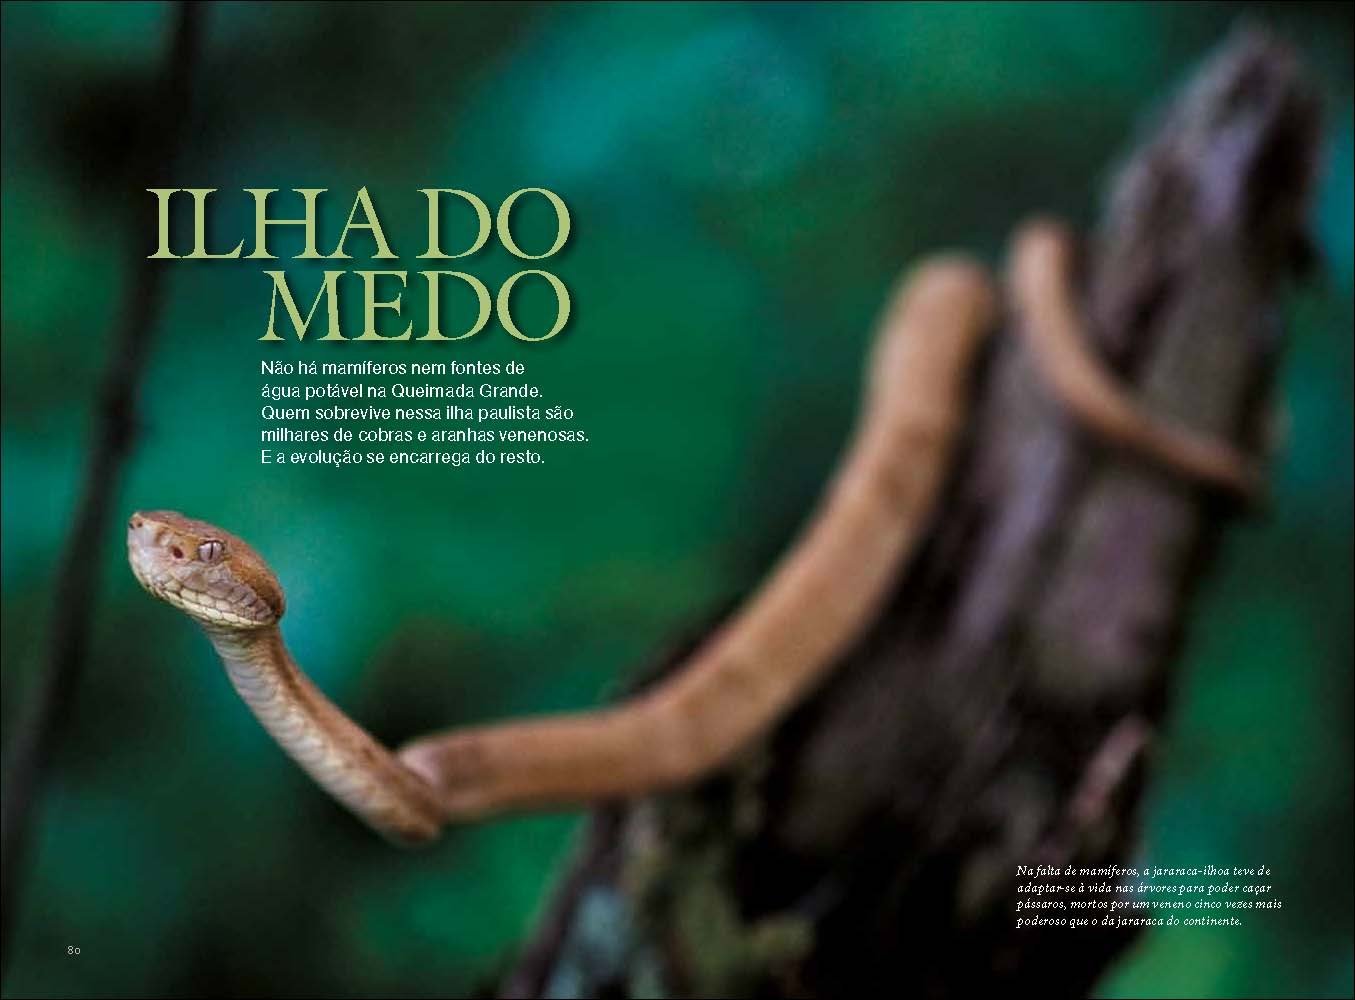 Остров змей в Бразилии